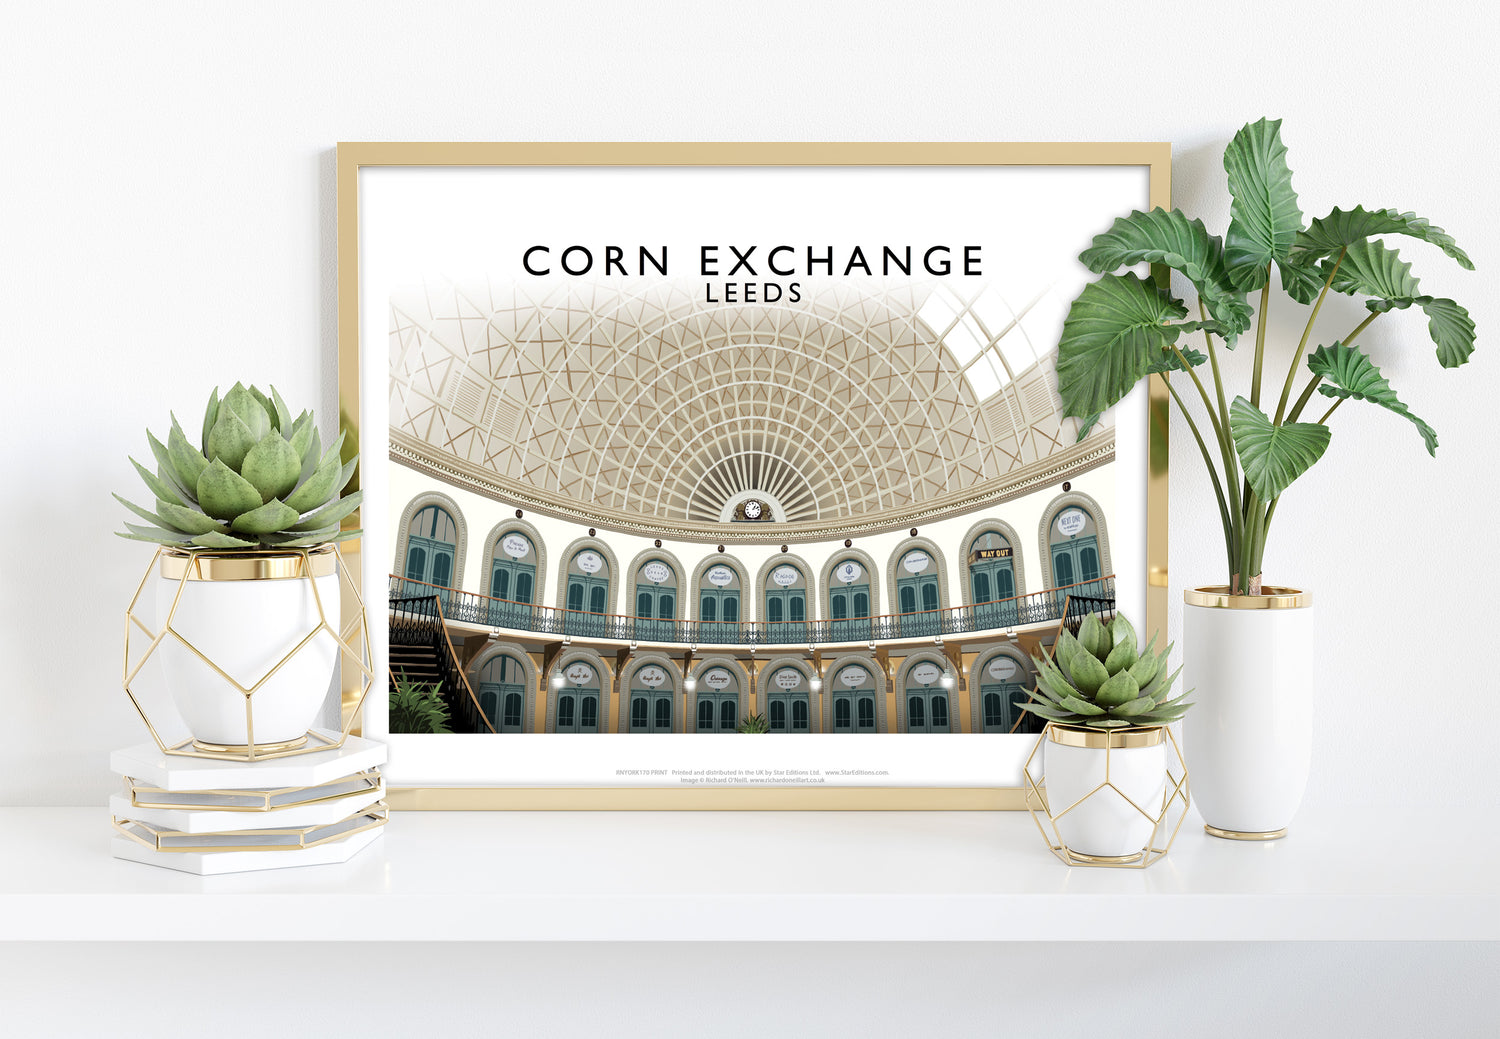 Corn Exchange, Leeds - Art Print